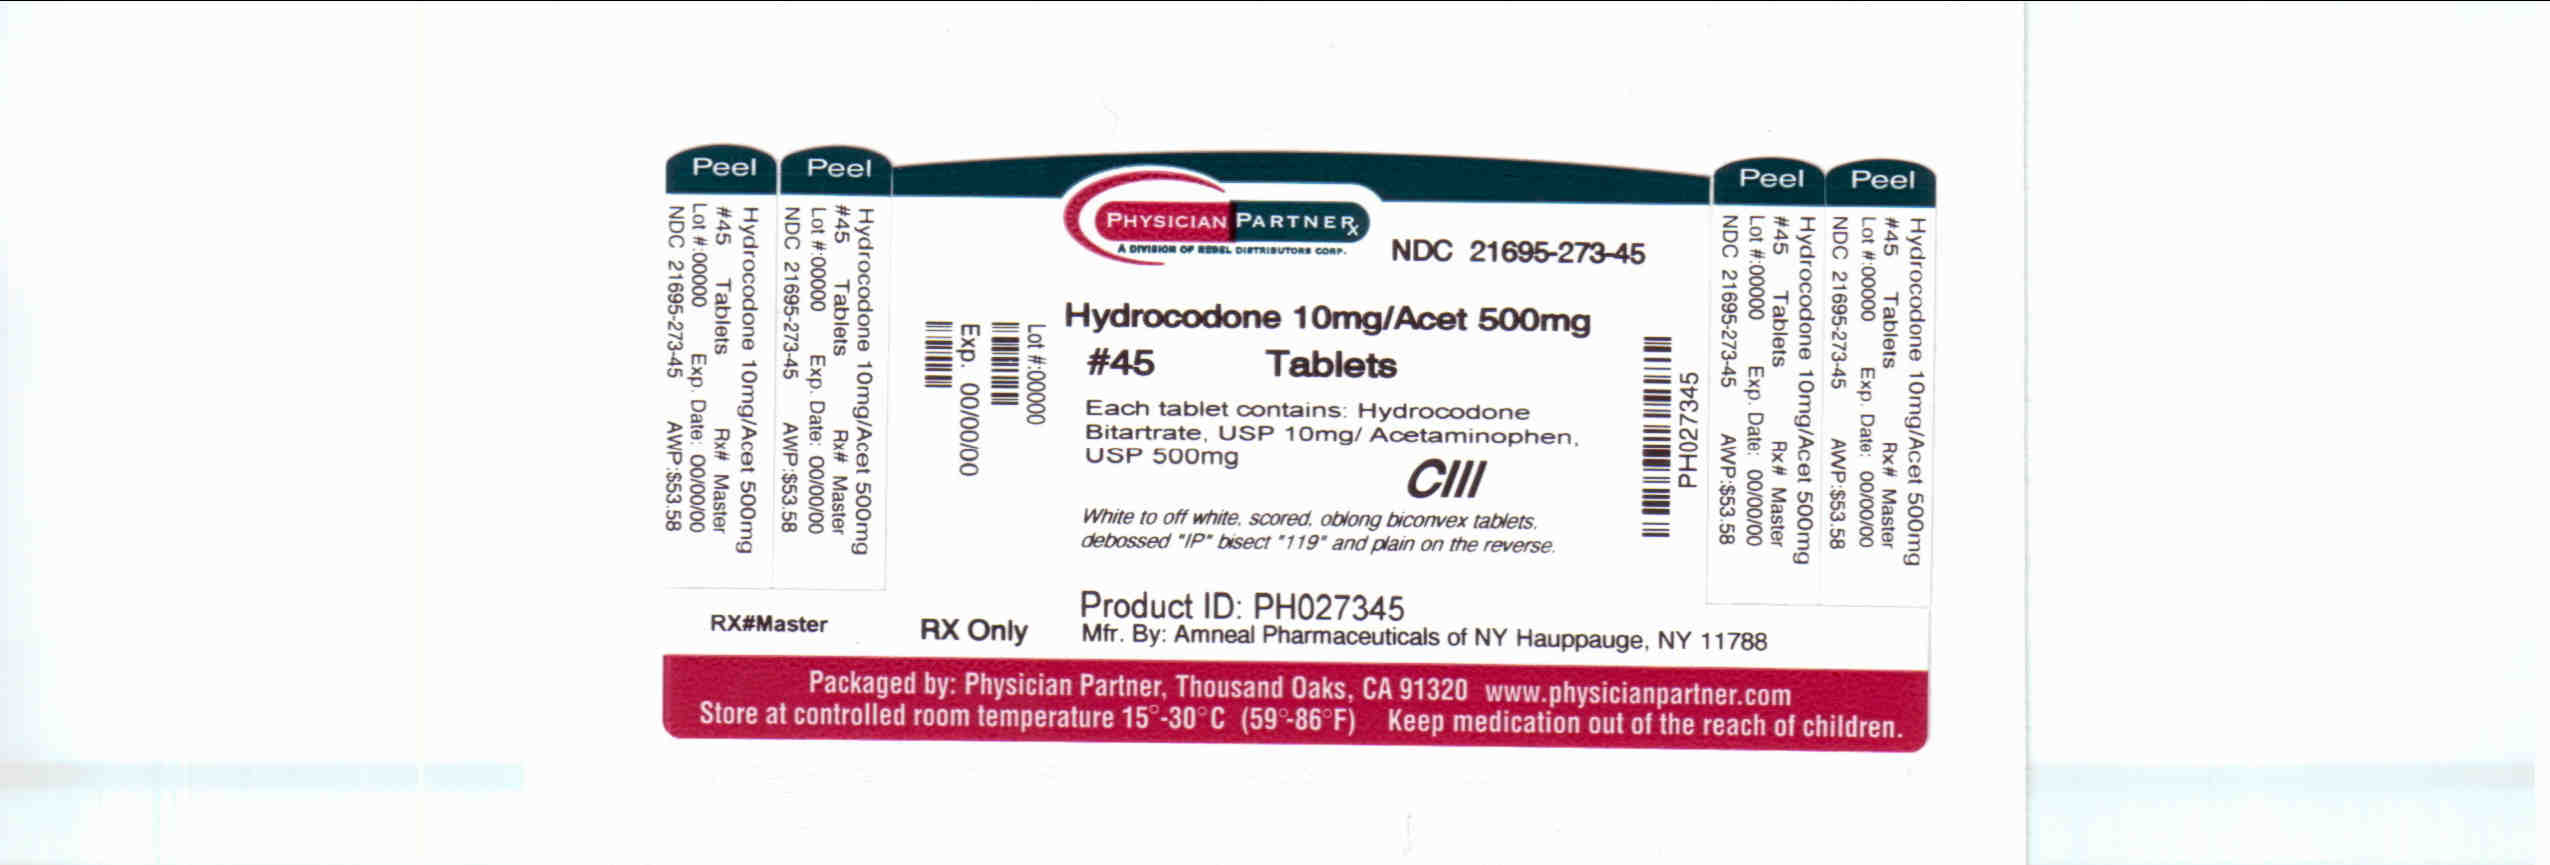 Hydrocodone 10mg/Acet500mg